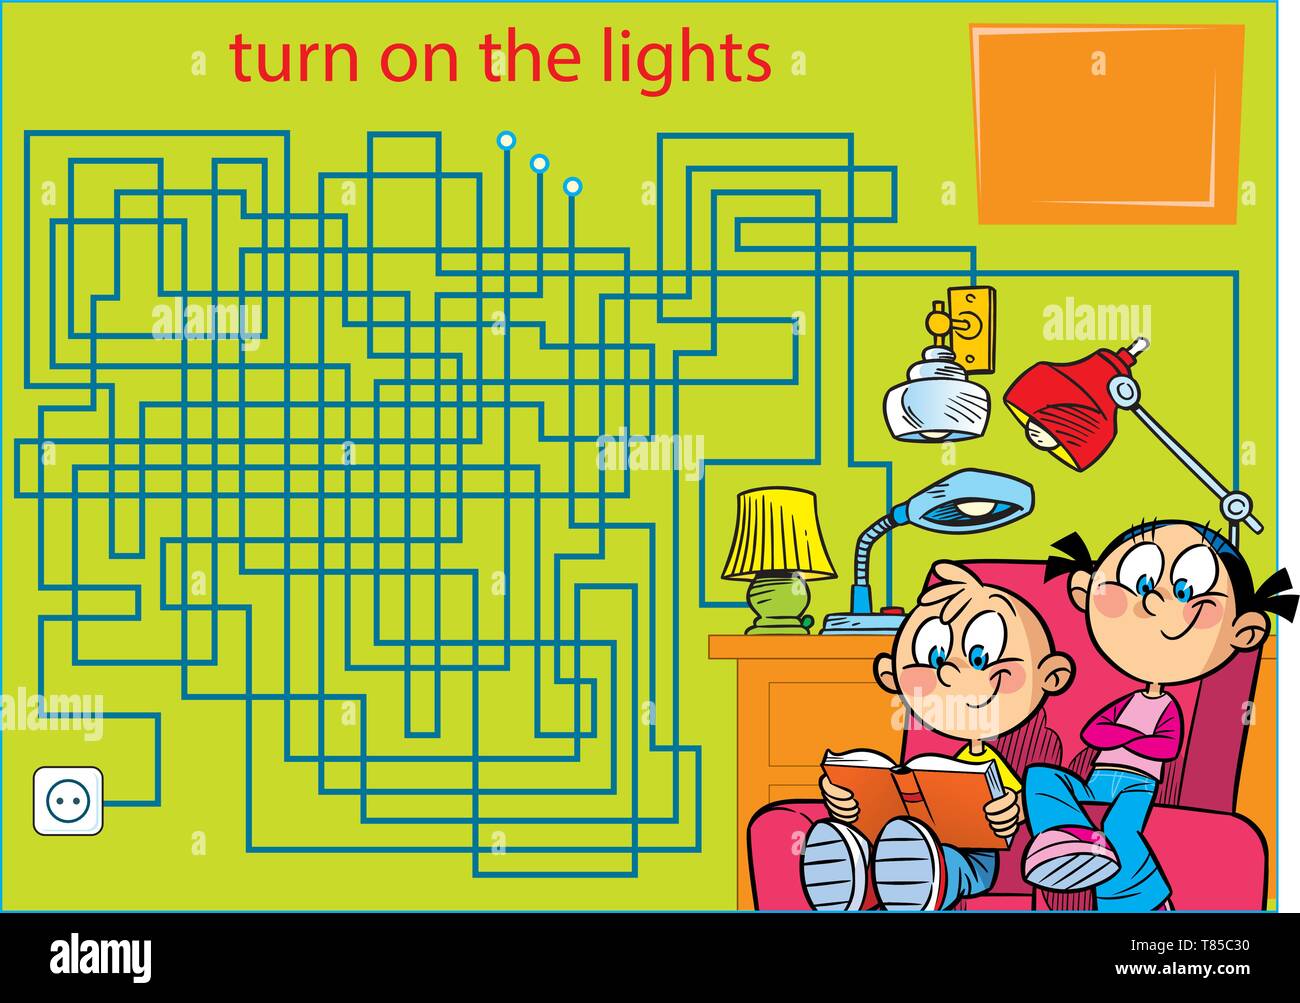 In Vector Illustration puzzle Labyrinth mit Kindern, ein Buch zu lesen. Einen Weg finden, um die Beleuchtung einzuschalten. Stock Vektor